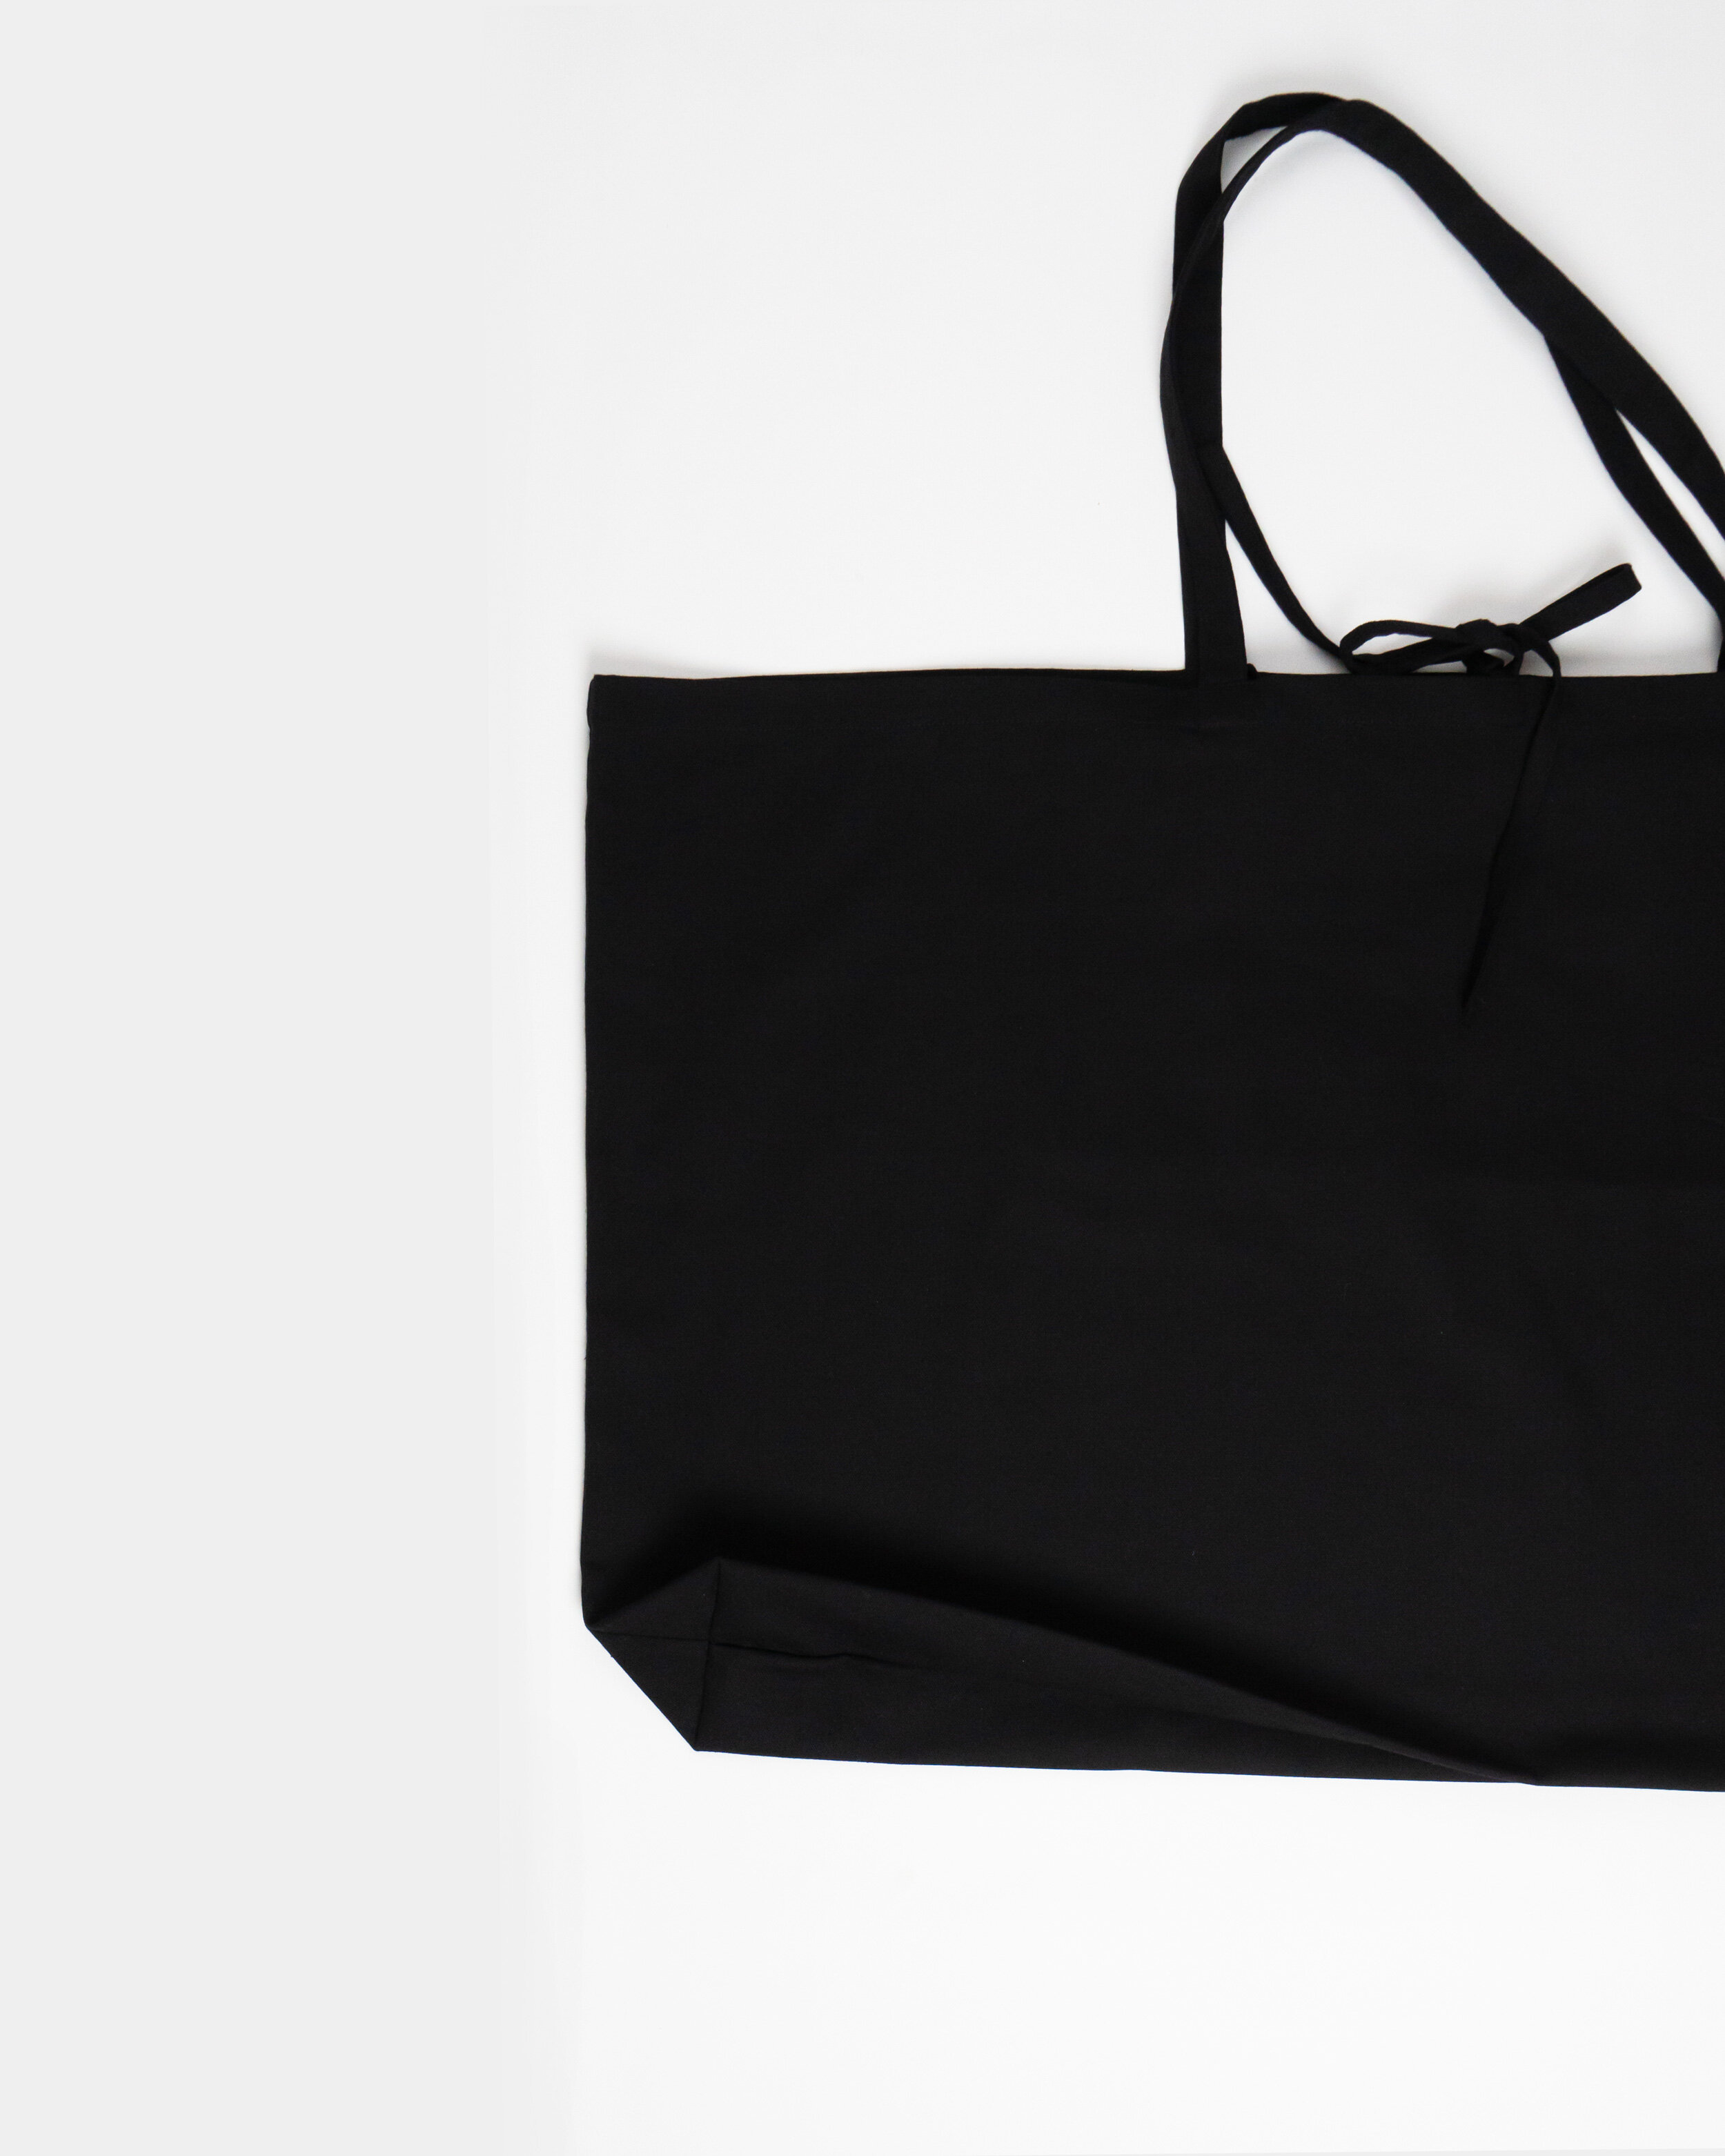 Leather Architect Portfolio Bag Cognac - Linden Is Enough